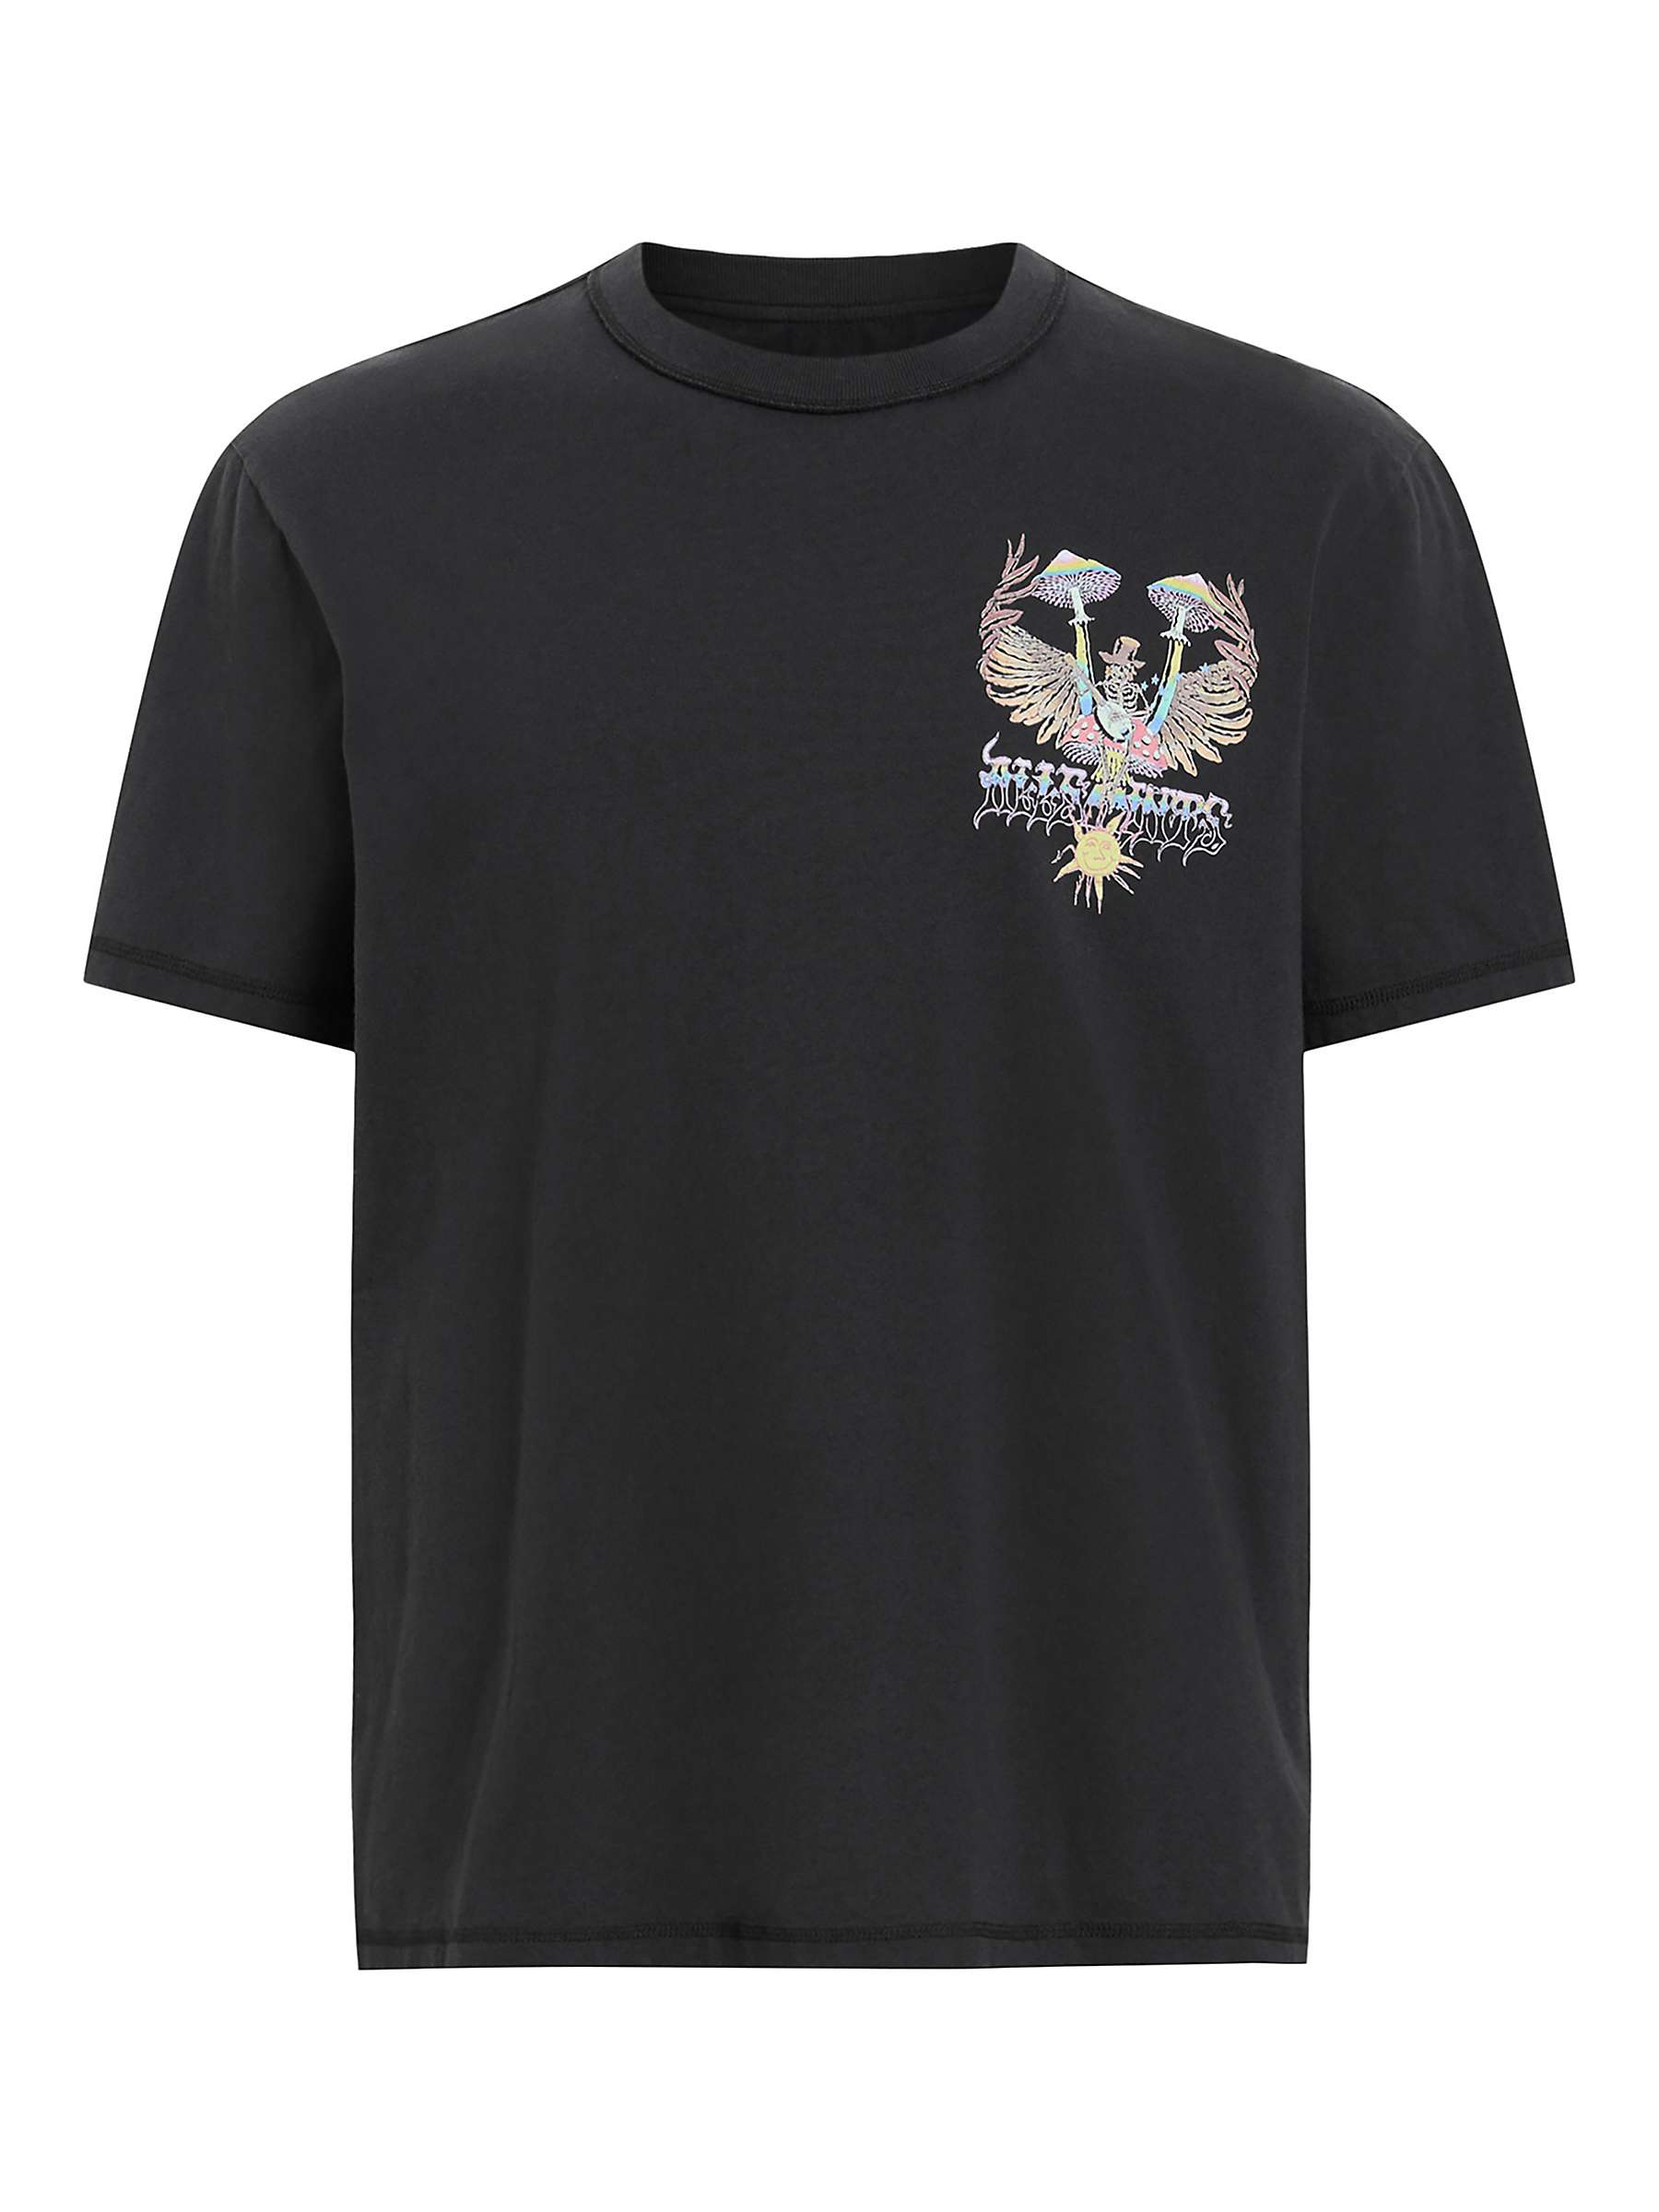 Buy AllSaints Strummer Short Sleeve Crew T-Shirt, Washed Black Online at johnlewis.com